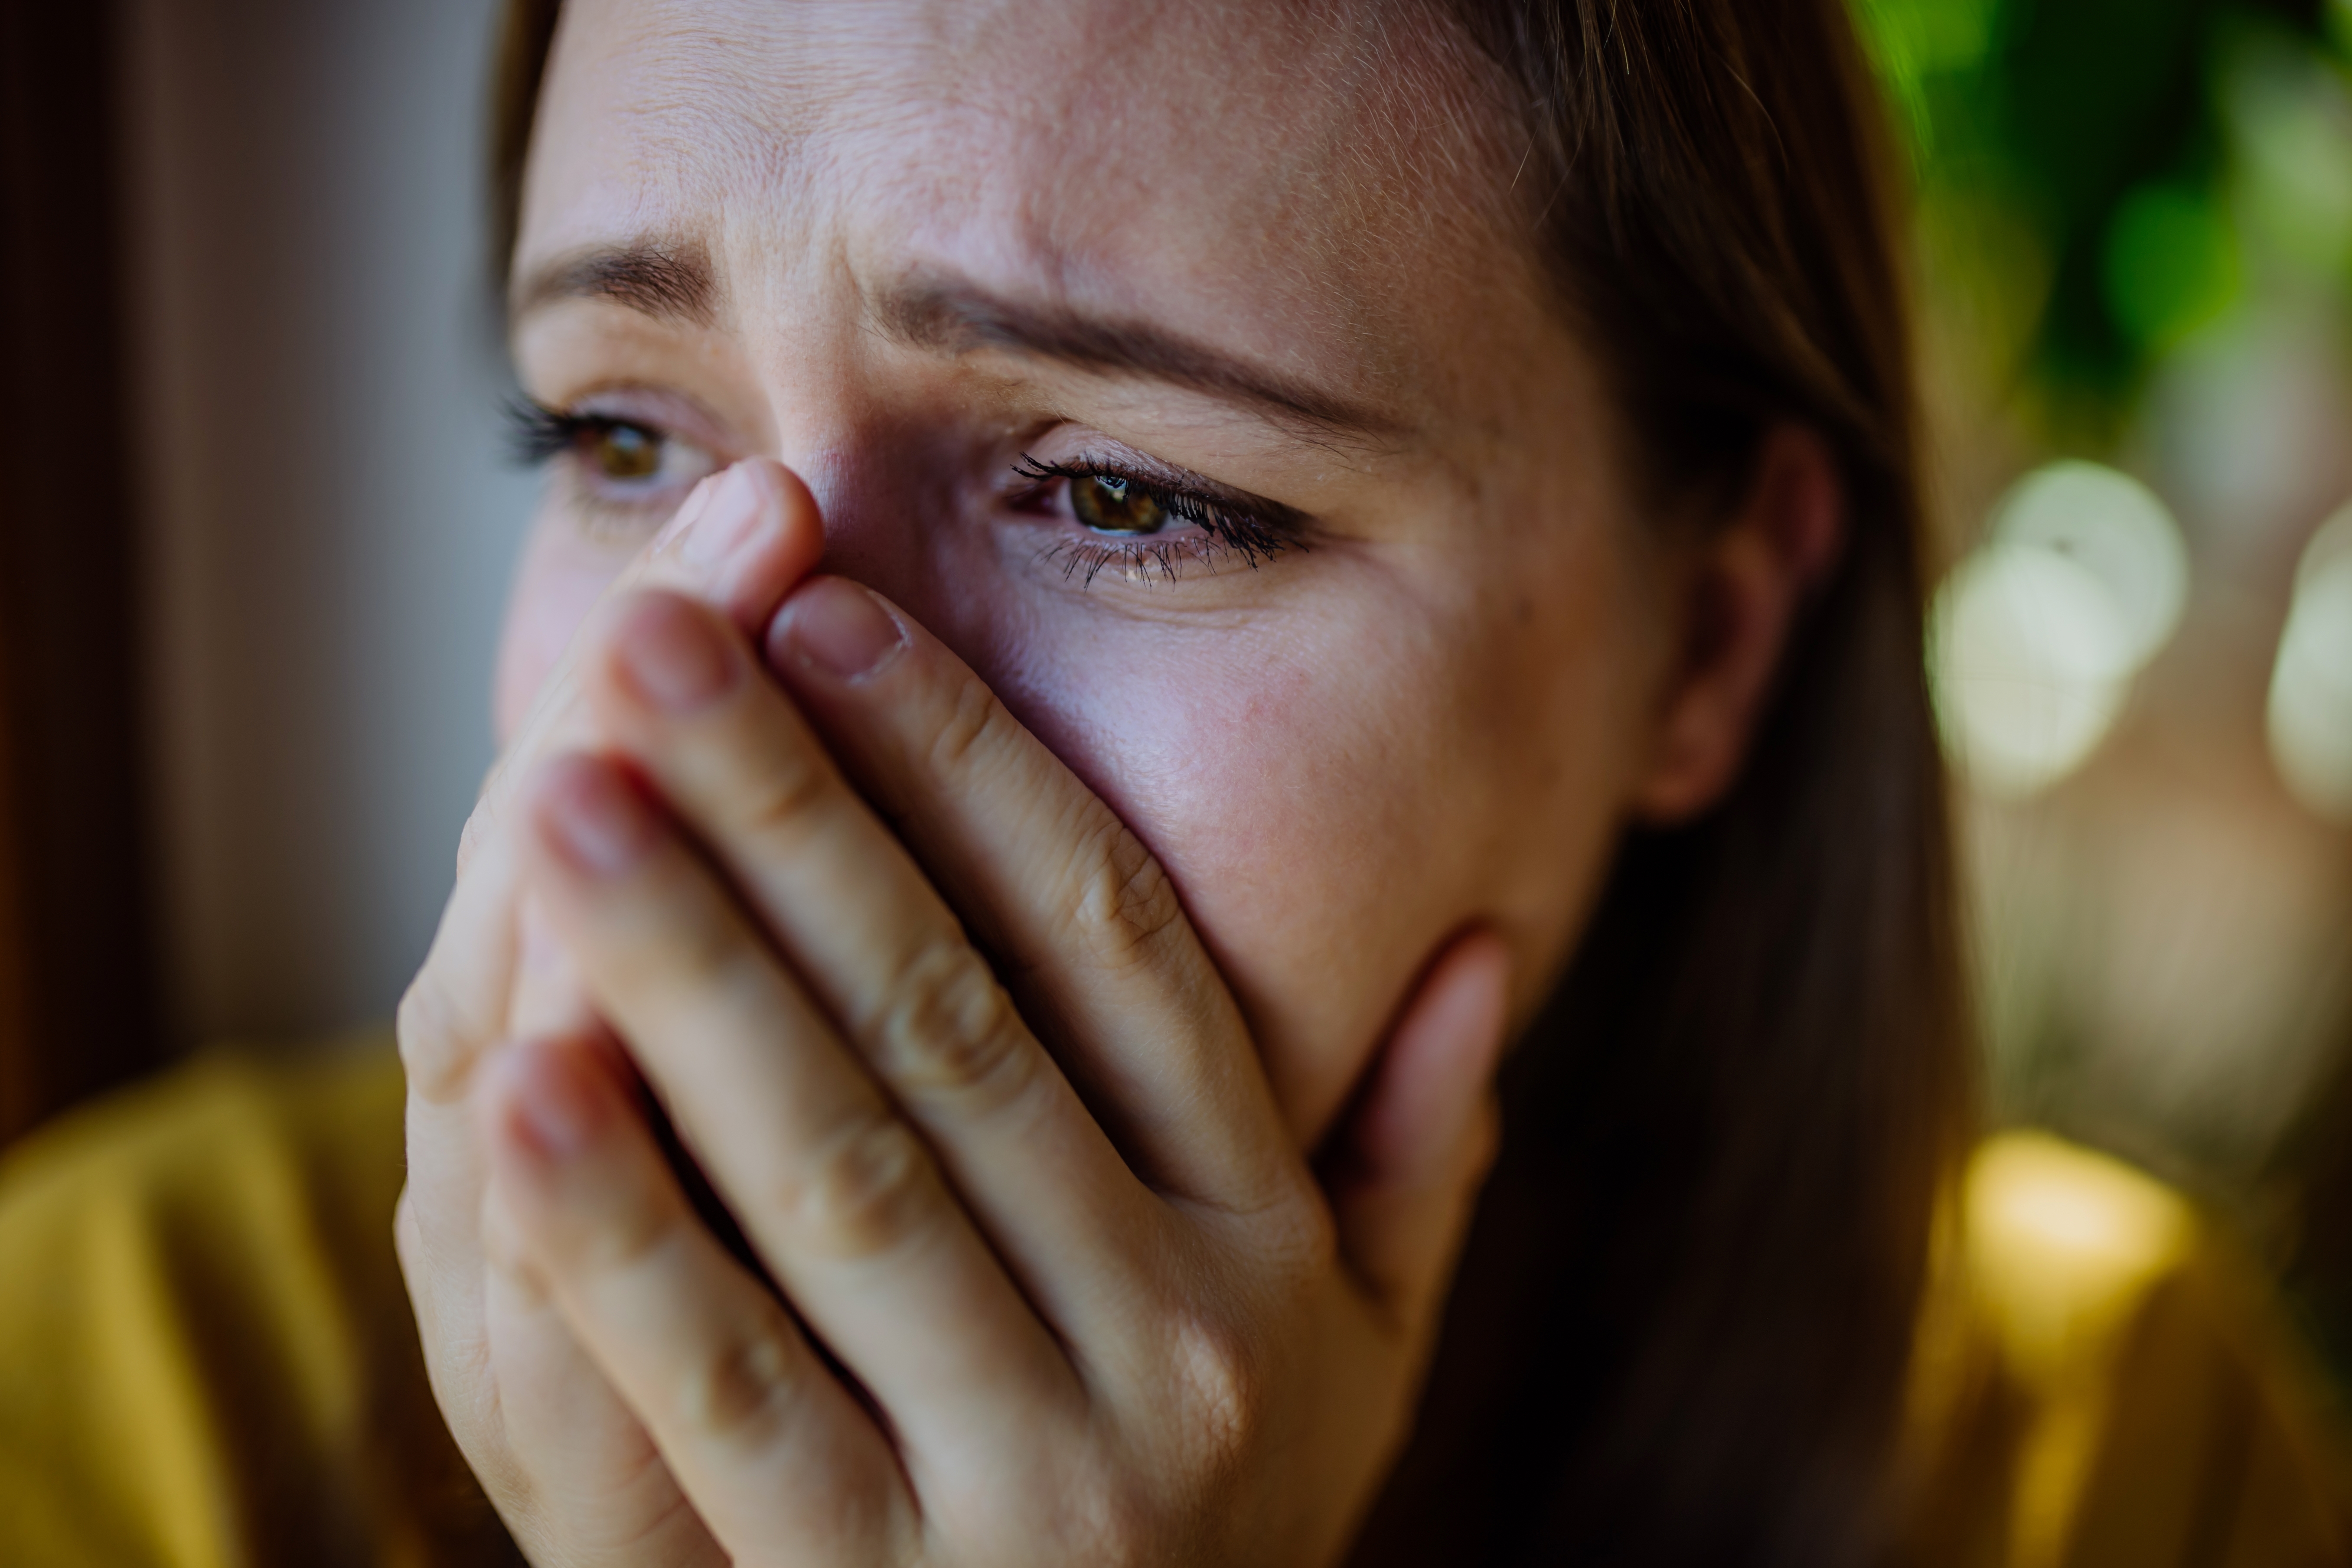 Mujer que sufre depresión | Fuente: Shutterstock